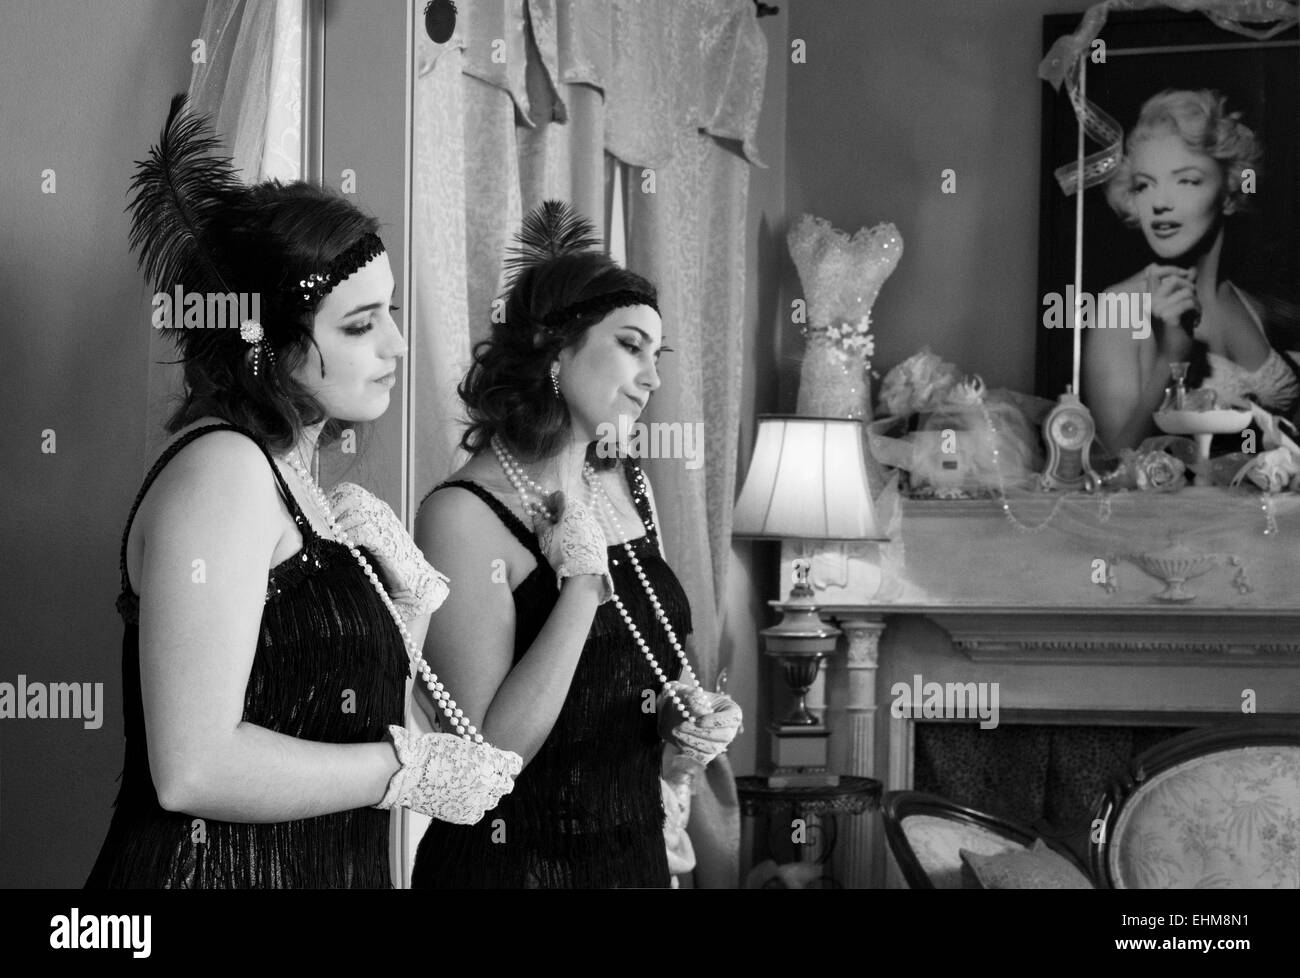 Señorita vistiendo ropa vintage en pensamiento profundo con el reflejo en el espejo y una foto de Marilyn Monroe en blanco y negro Foto de stock